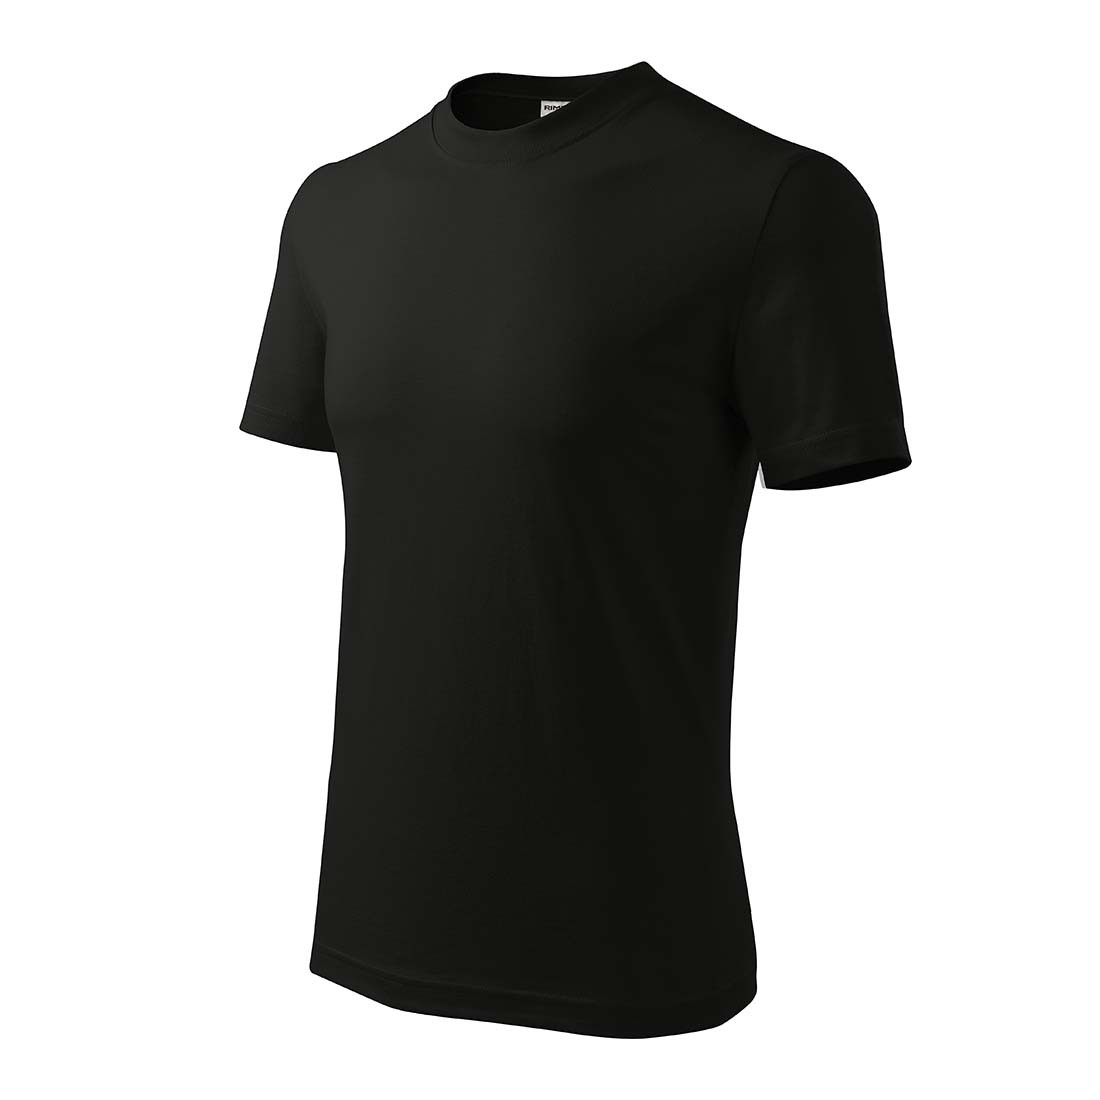 Tee-shirt unisex RECALL - Les vêtements de protection